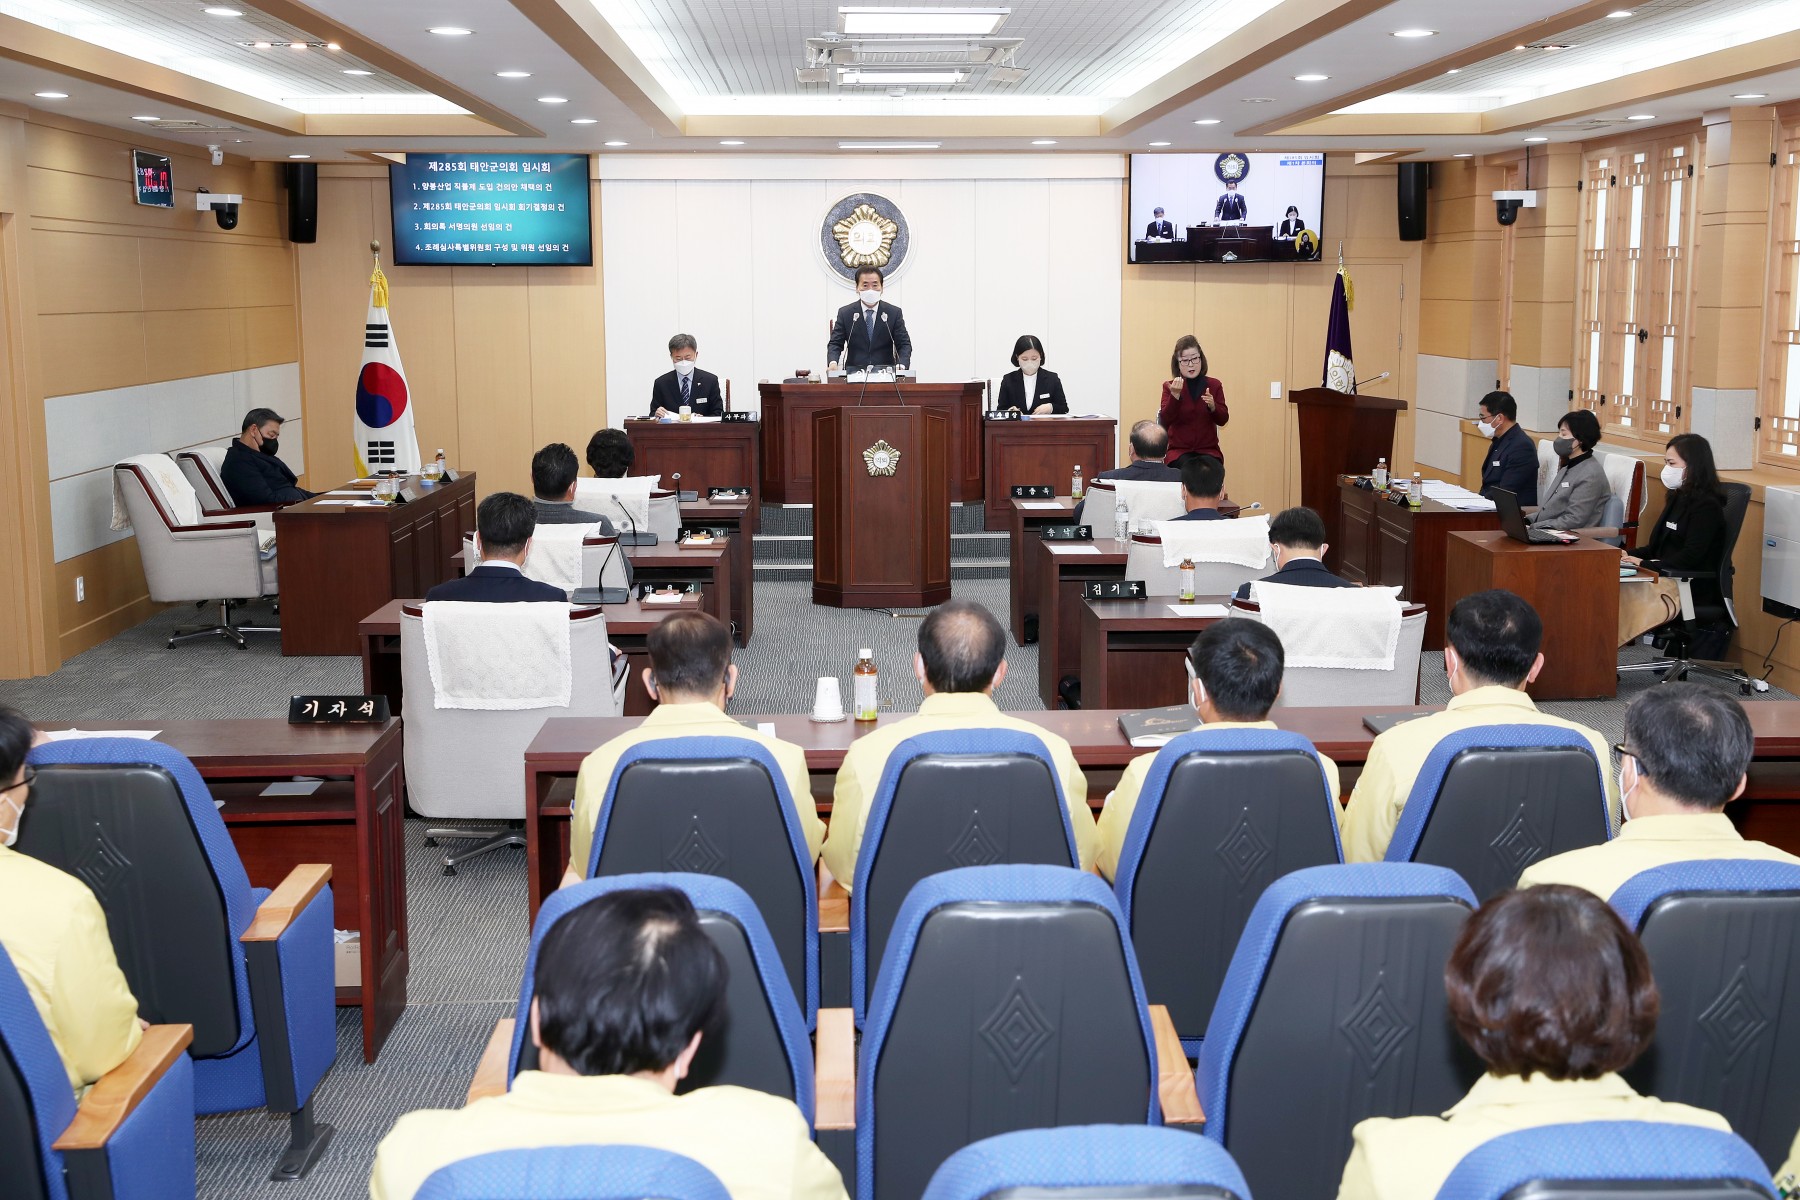 [보도자료] 태안군의회 본회의 생중계 수어통역방송 실시